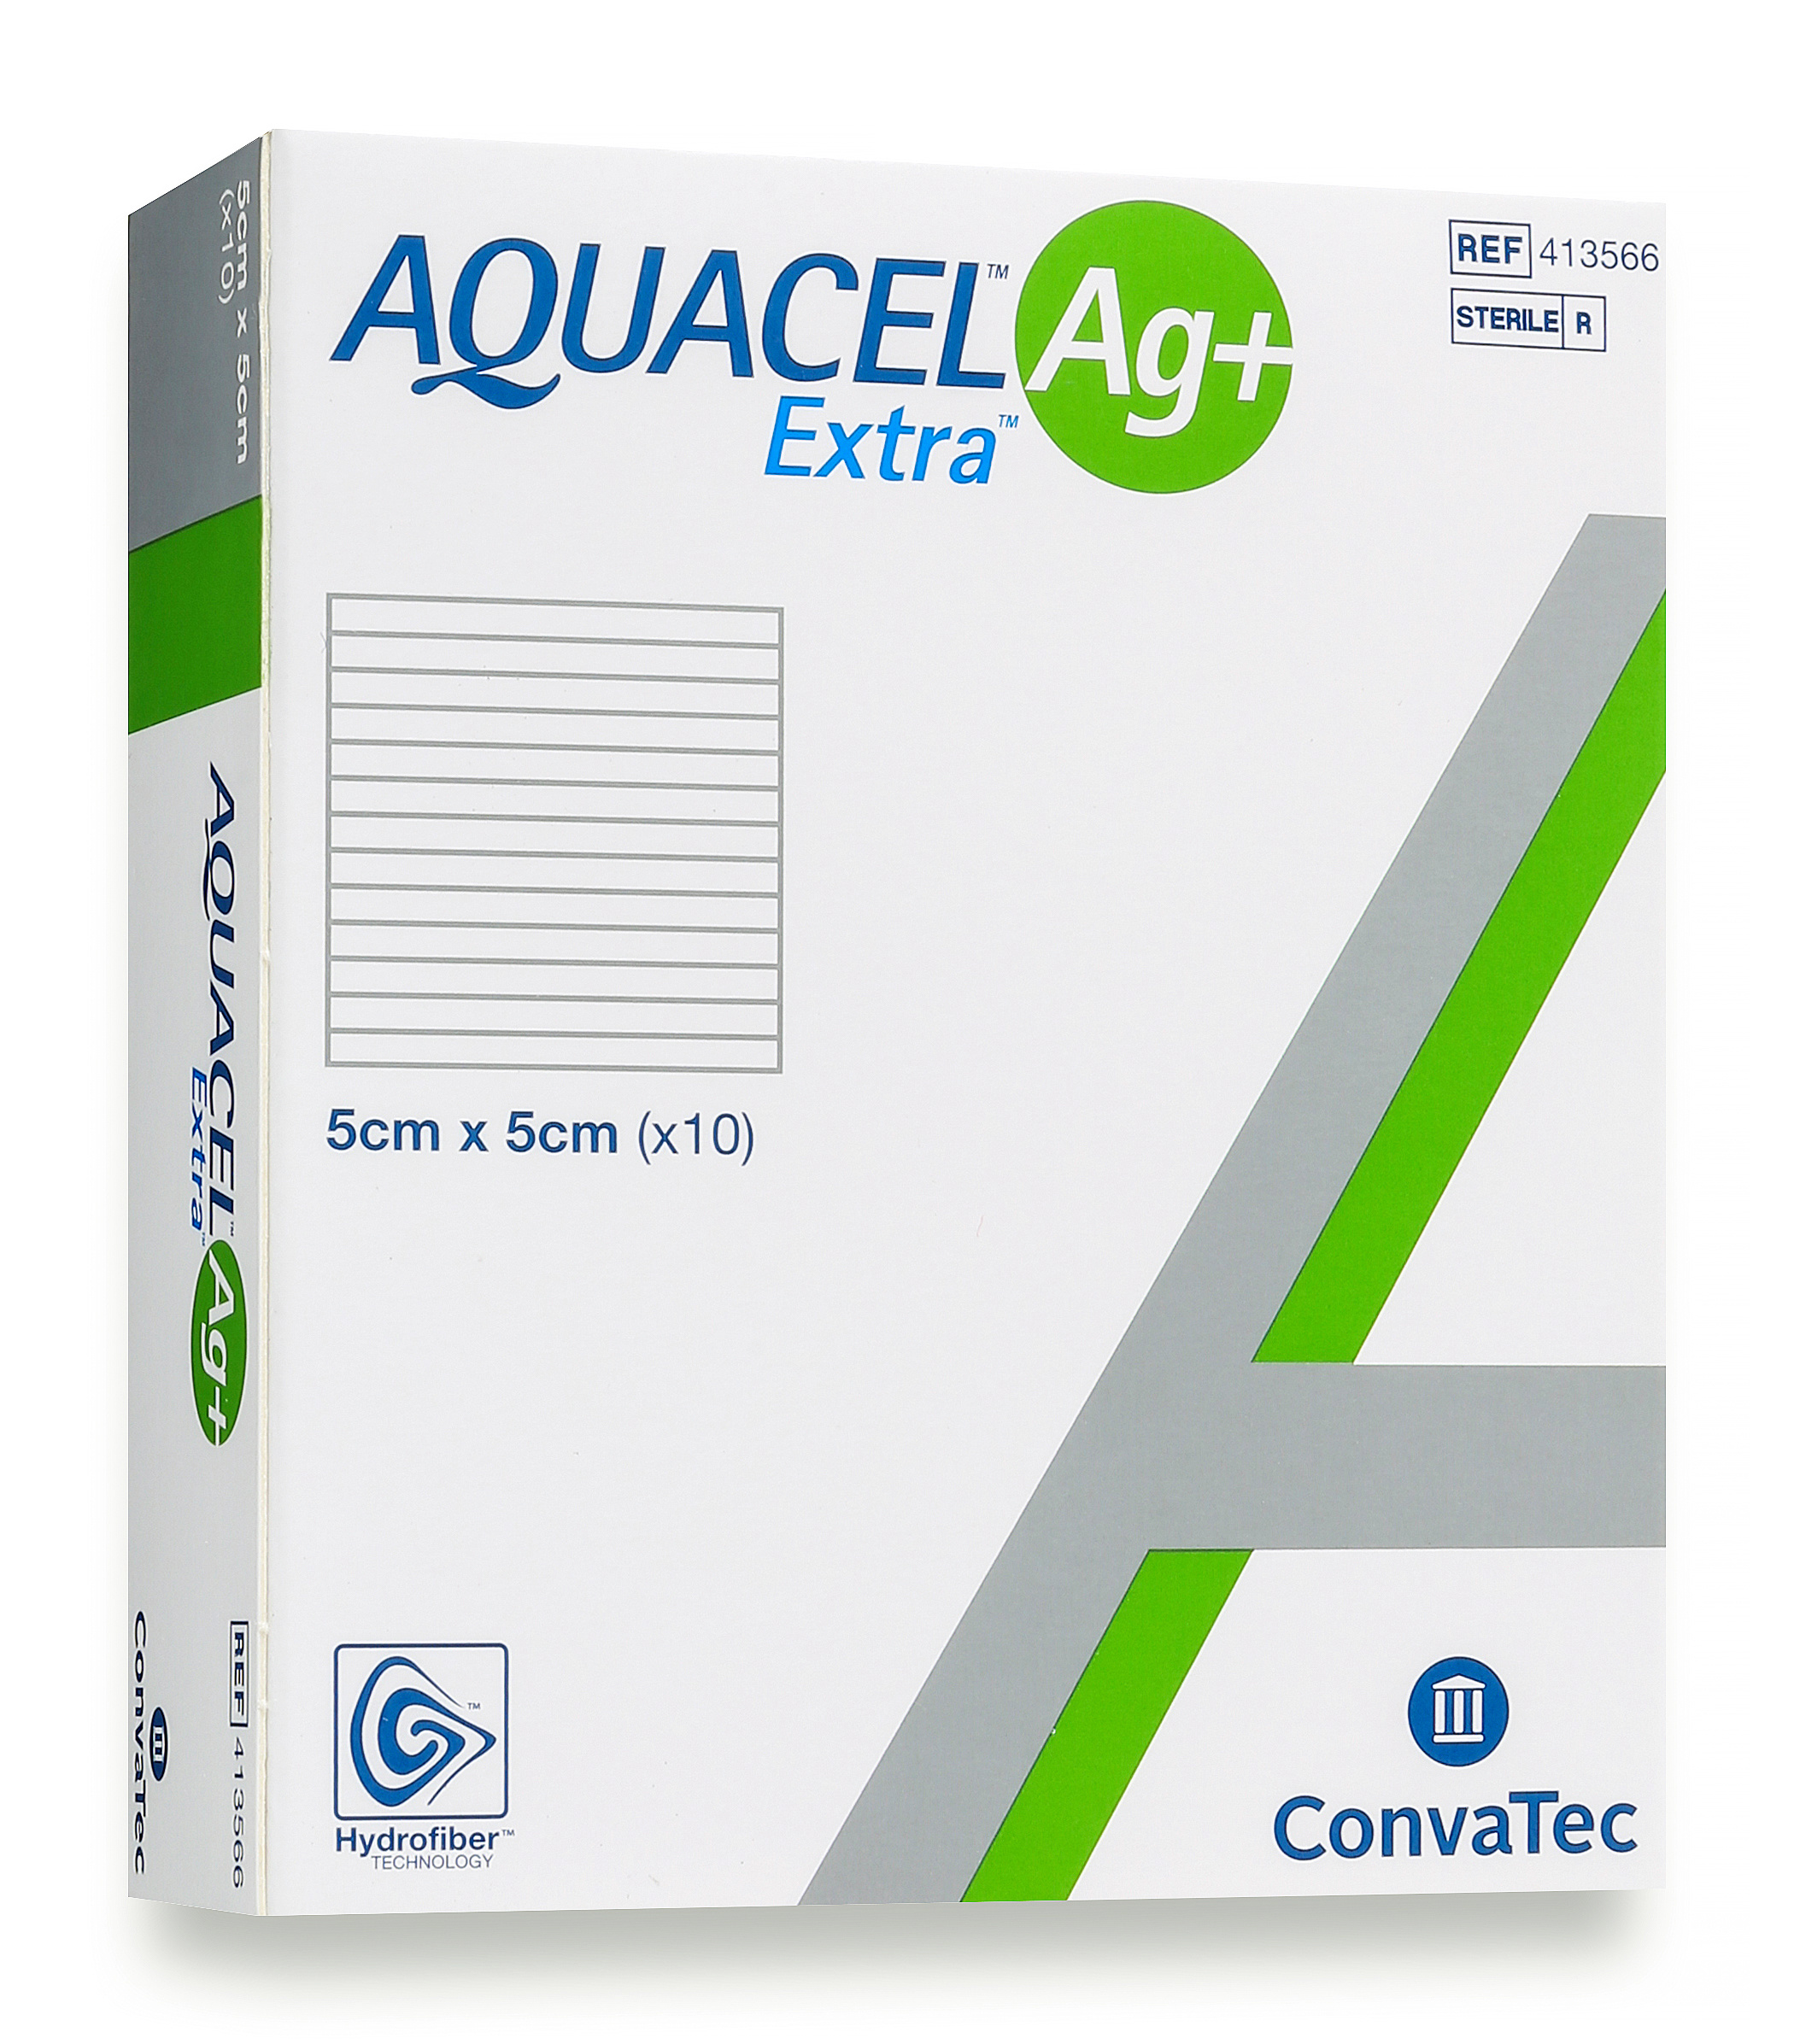 Aquacel Silver Dressing AG+ Extra 5cm x 5cm image 0